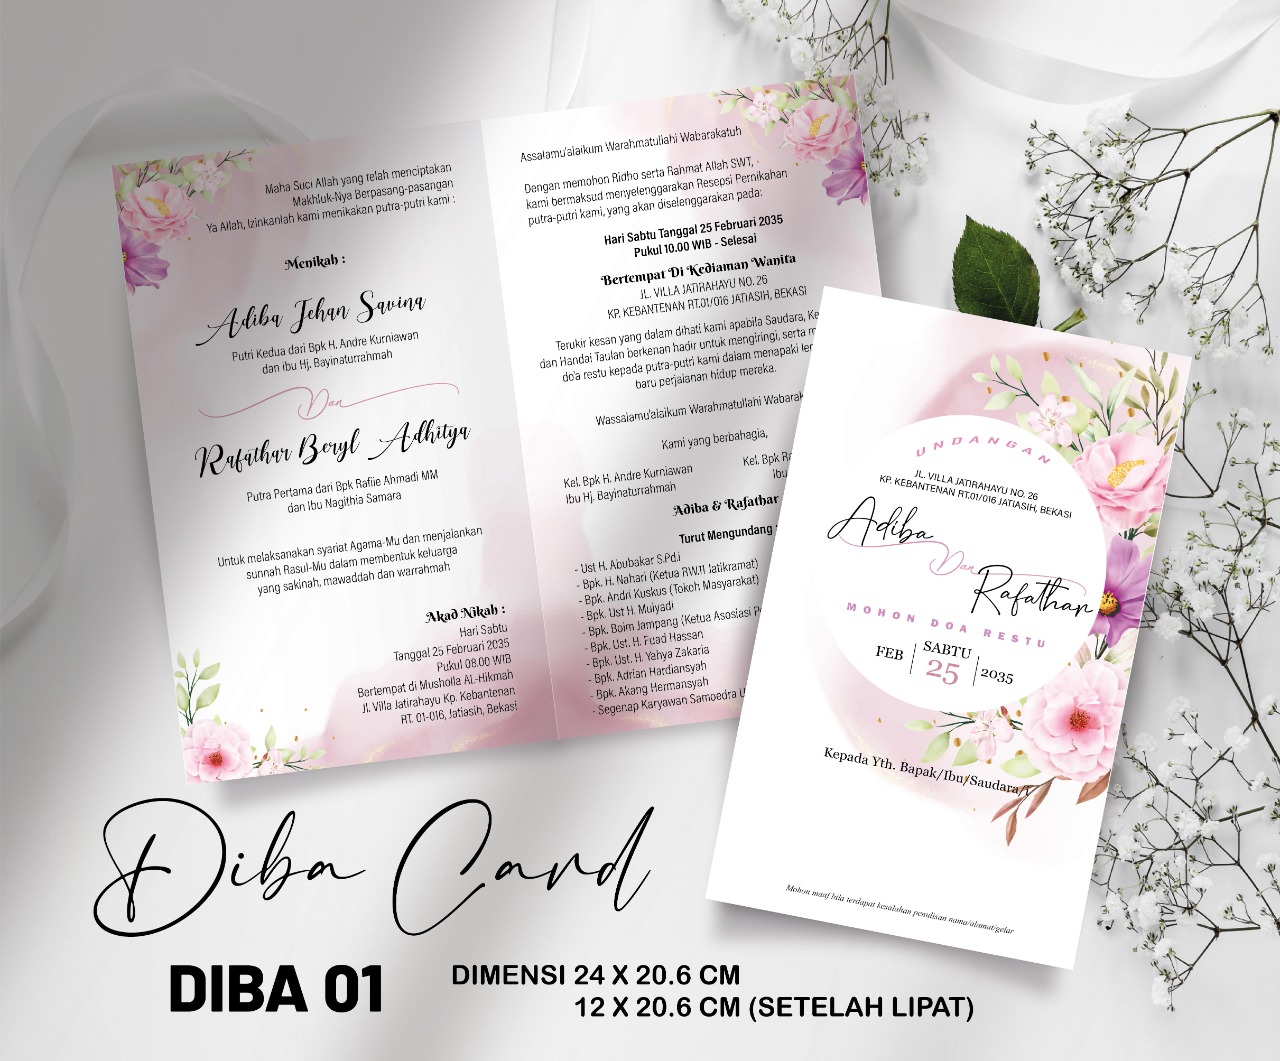 DIBA CARD 01 